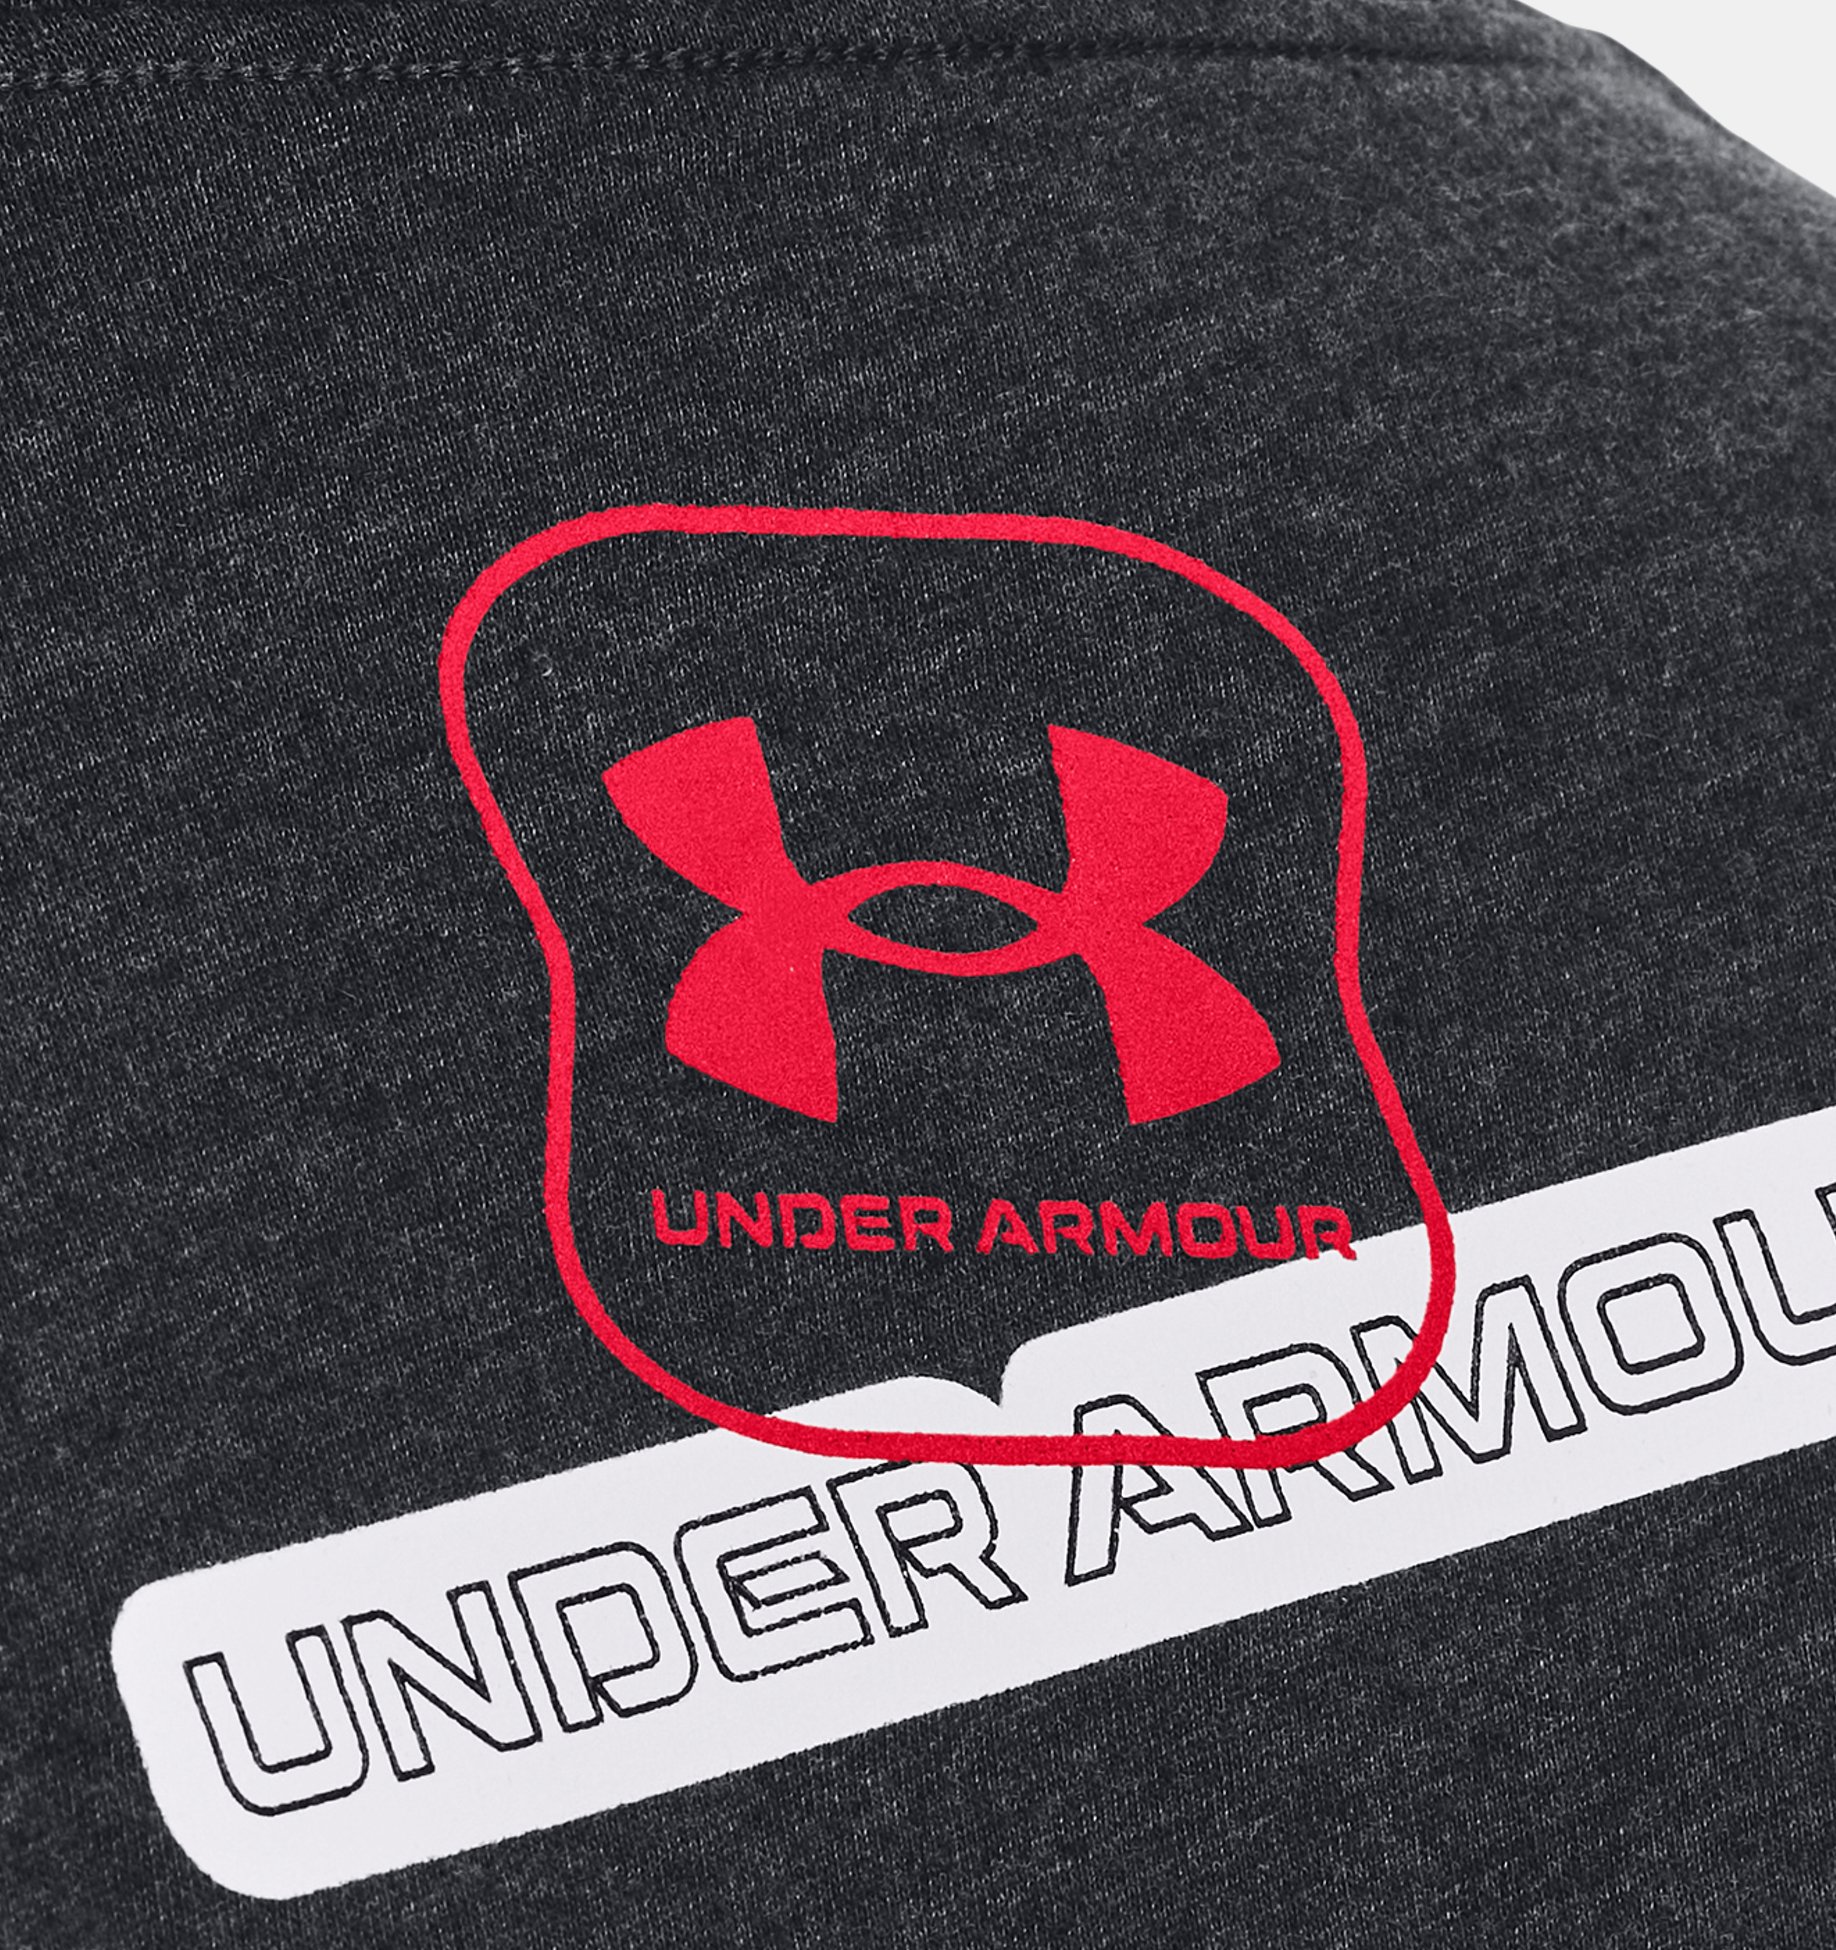 Under Armour -Decal Logo Sticker